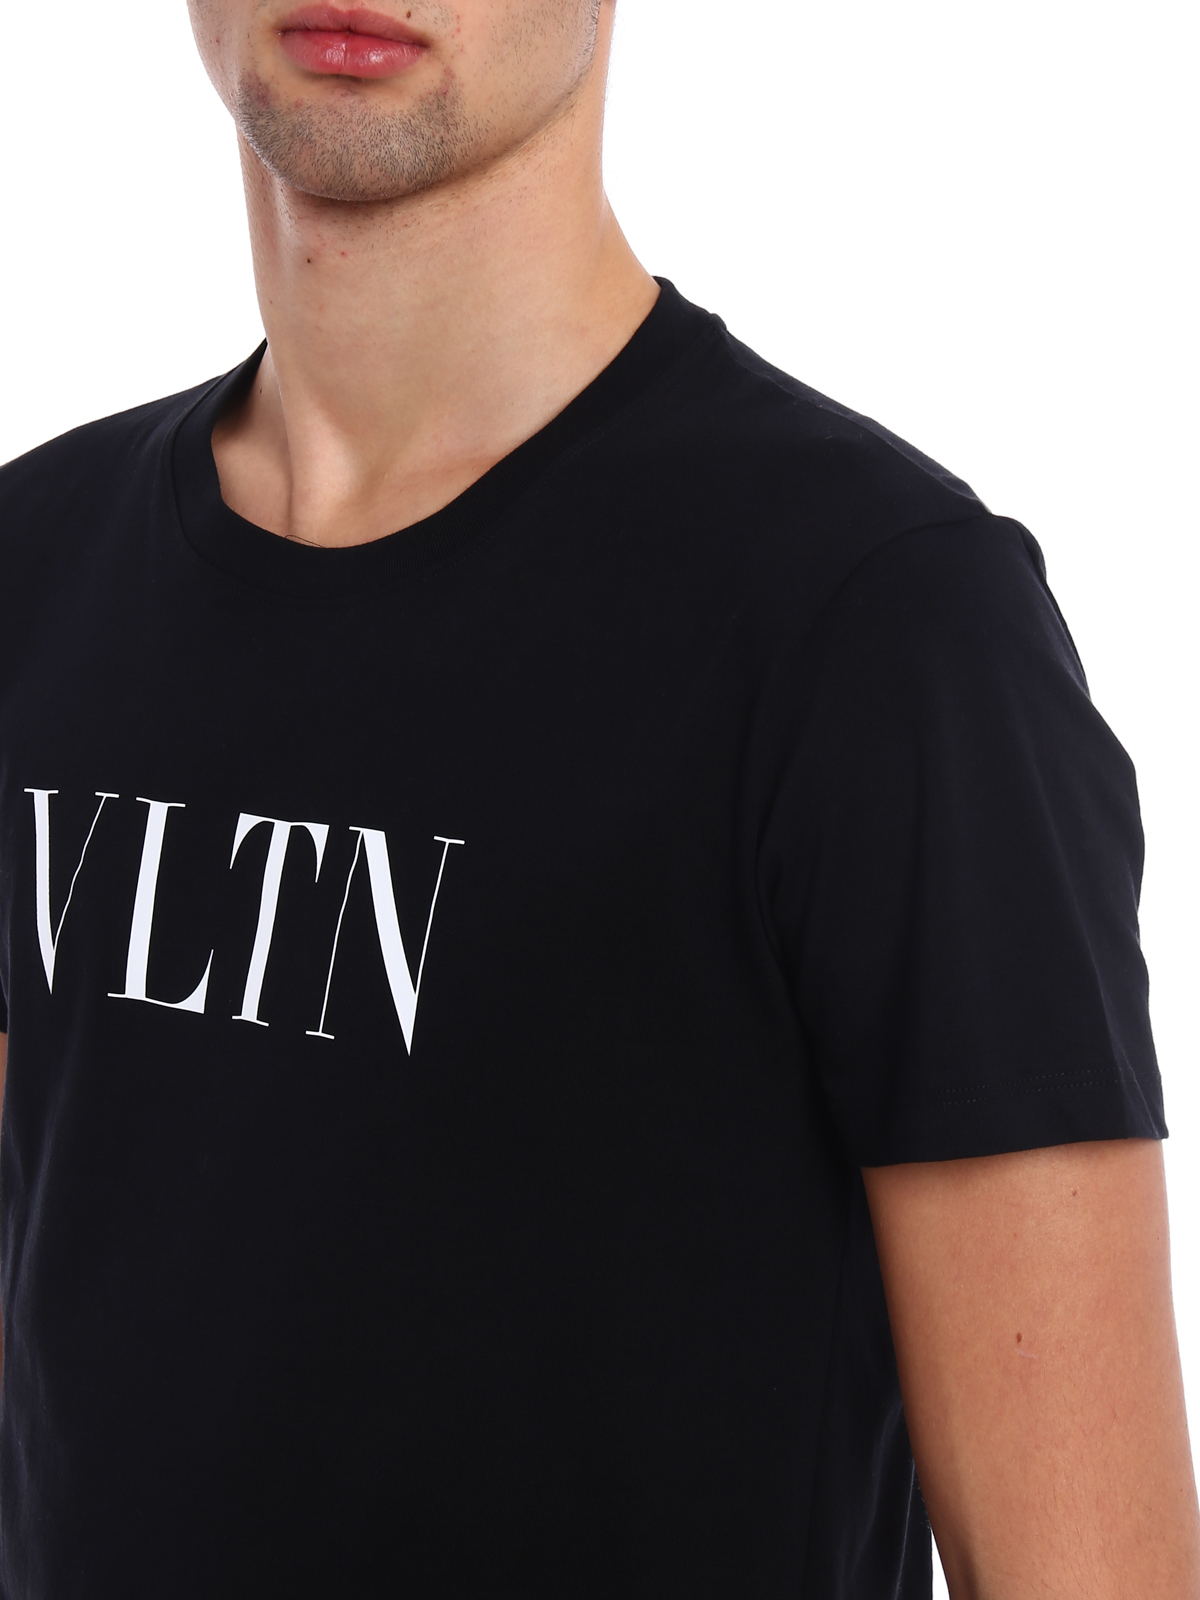 Black Valentino T Shirt Top Sellers, 55% OFF | centro-innato.com